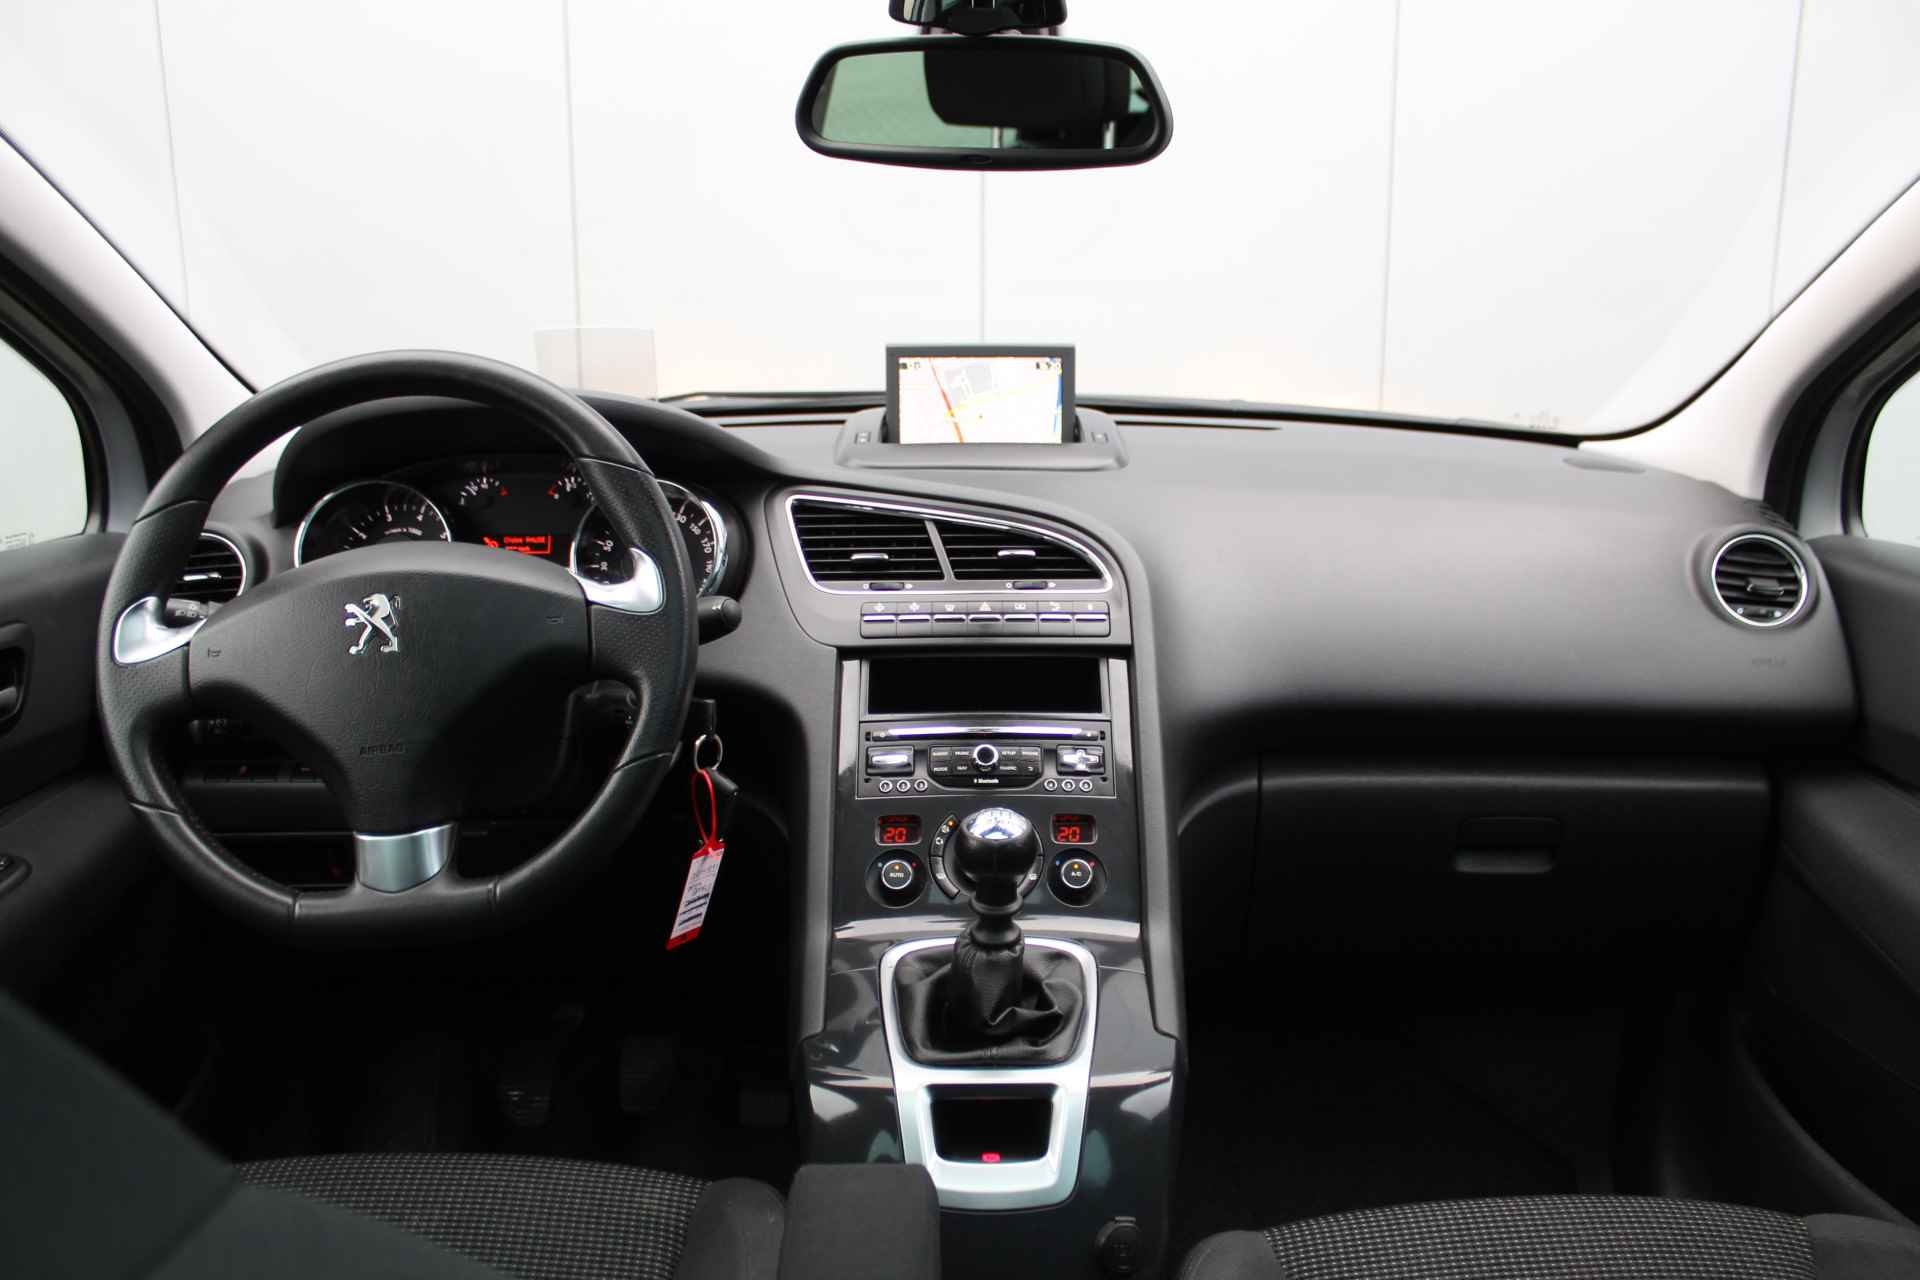 Peugeot 5008 1.6 THP Allure Trekhaak - Panoramadak met jalousie - Head-Up disp. - Navigatie Parkeer sensoren v+a - 17 Inch L.M. velgen - 11/47